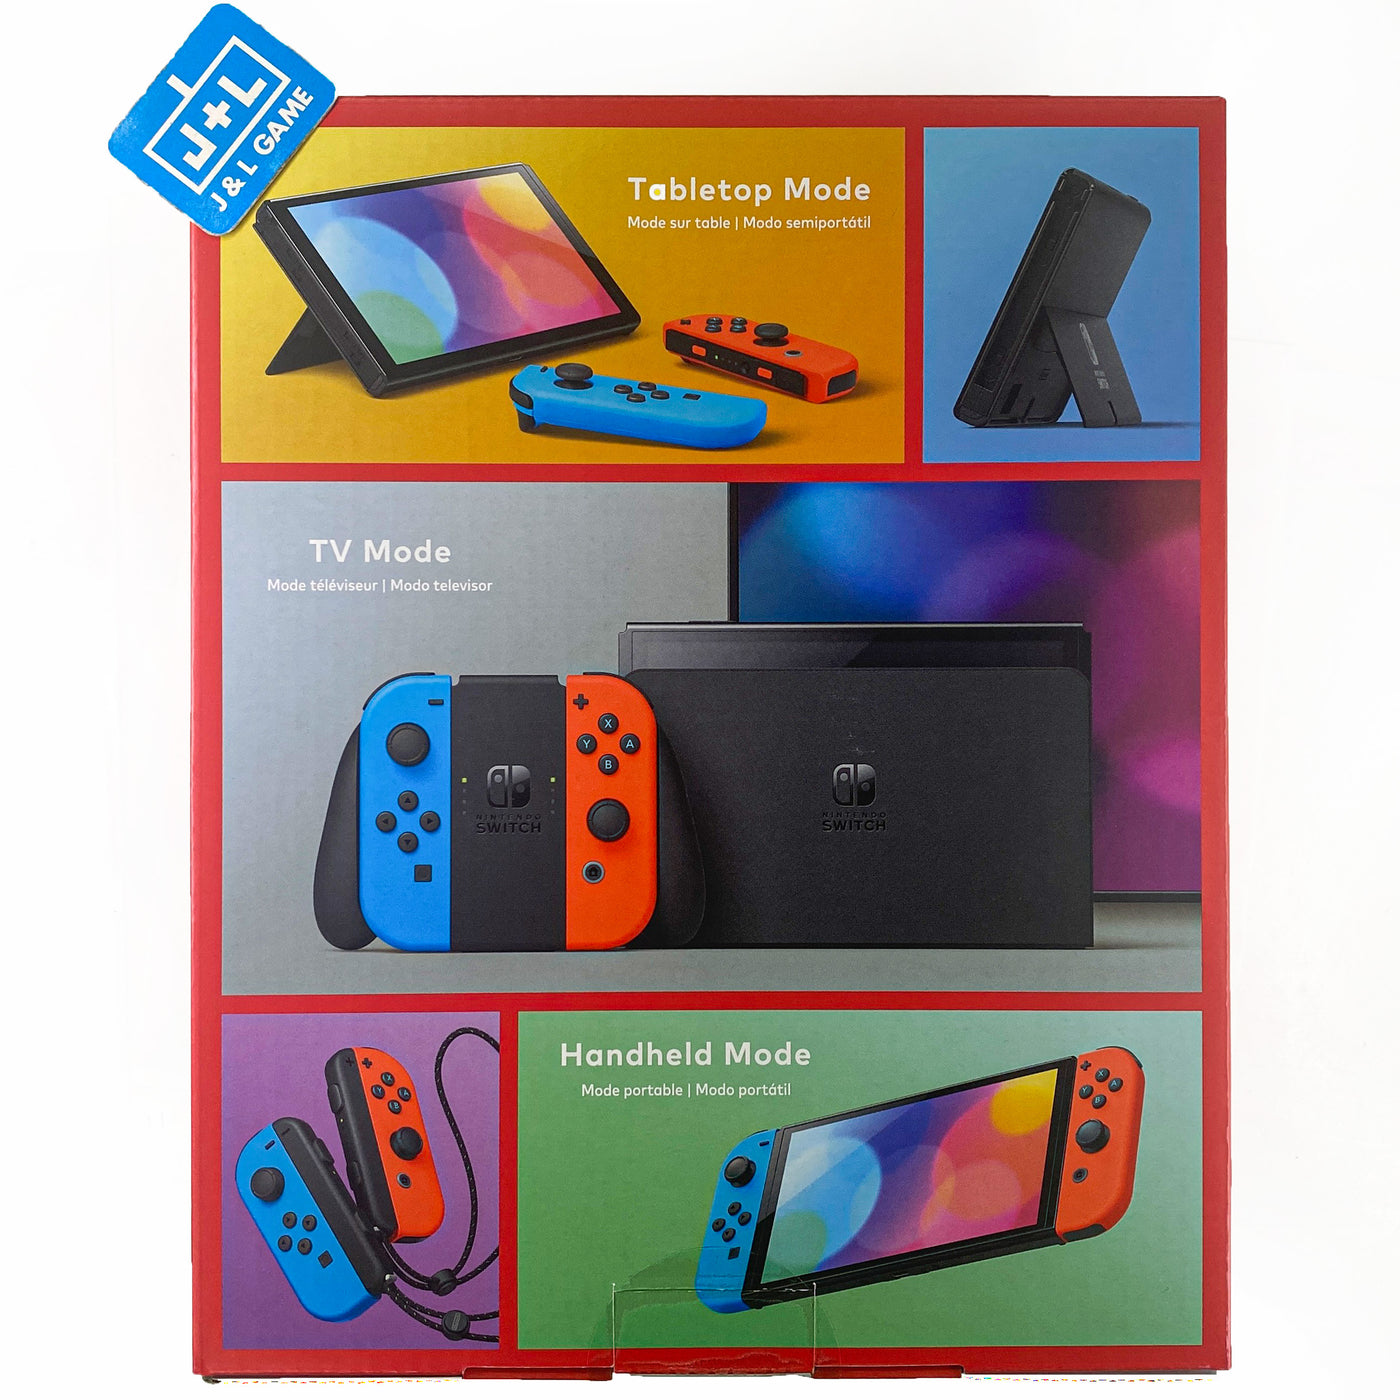 Nintendo Switch (modèle OLED) avec manettes Joy-Con bleu néon / rouge néon